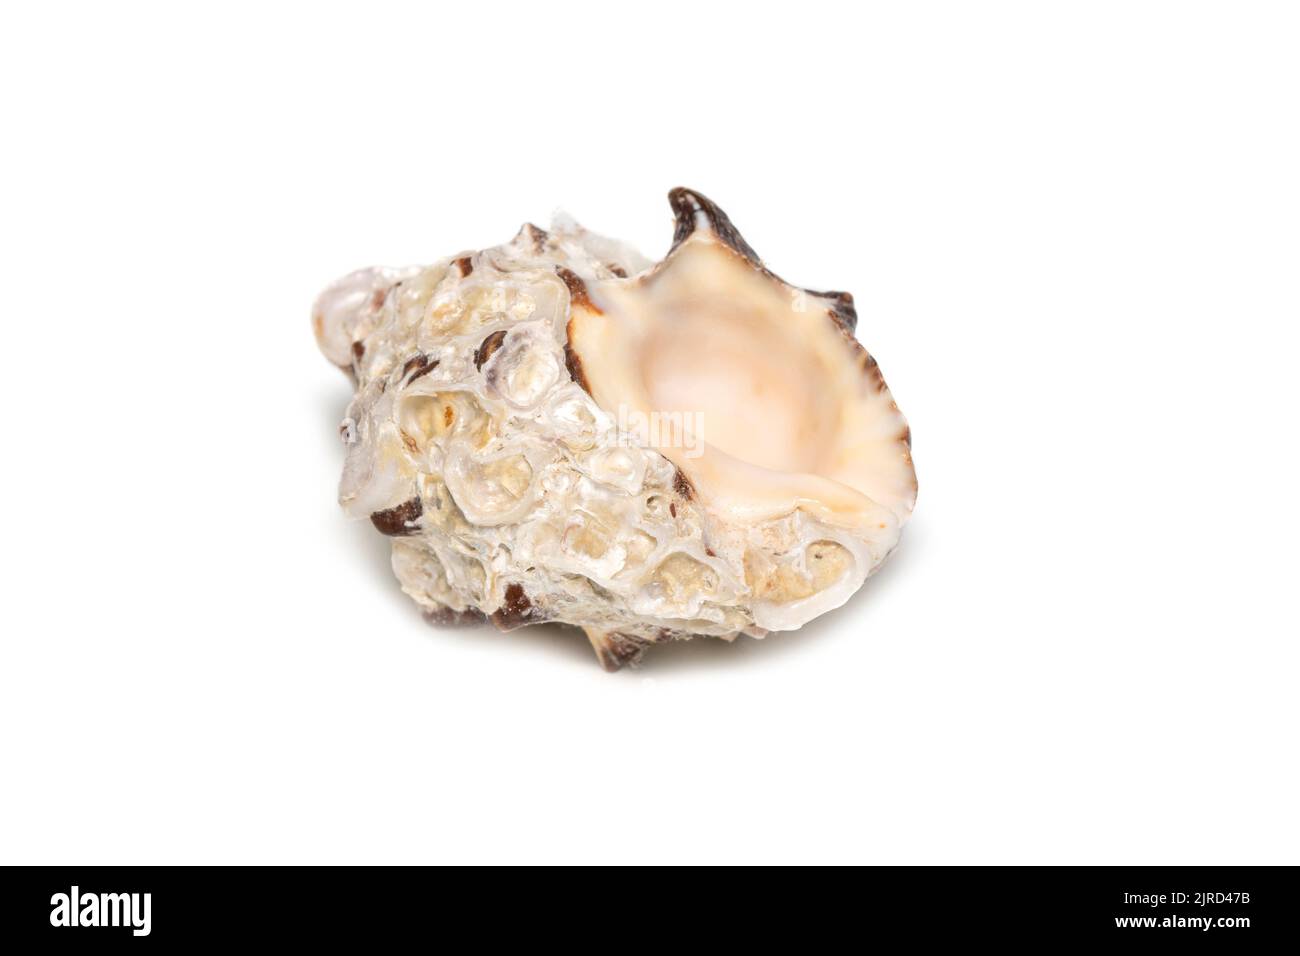 Image de la resishia bitubercularis seashells sur fond blanc. Animaux sous-marins. Coquillages. Banque D'Images